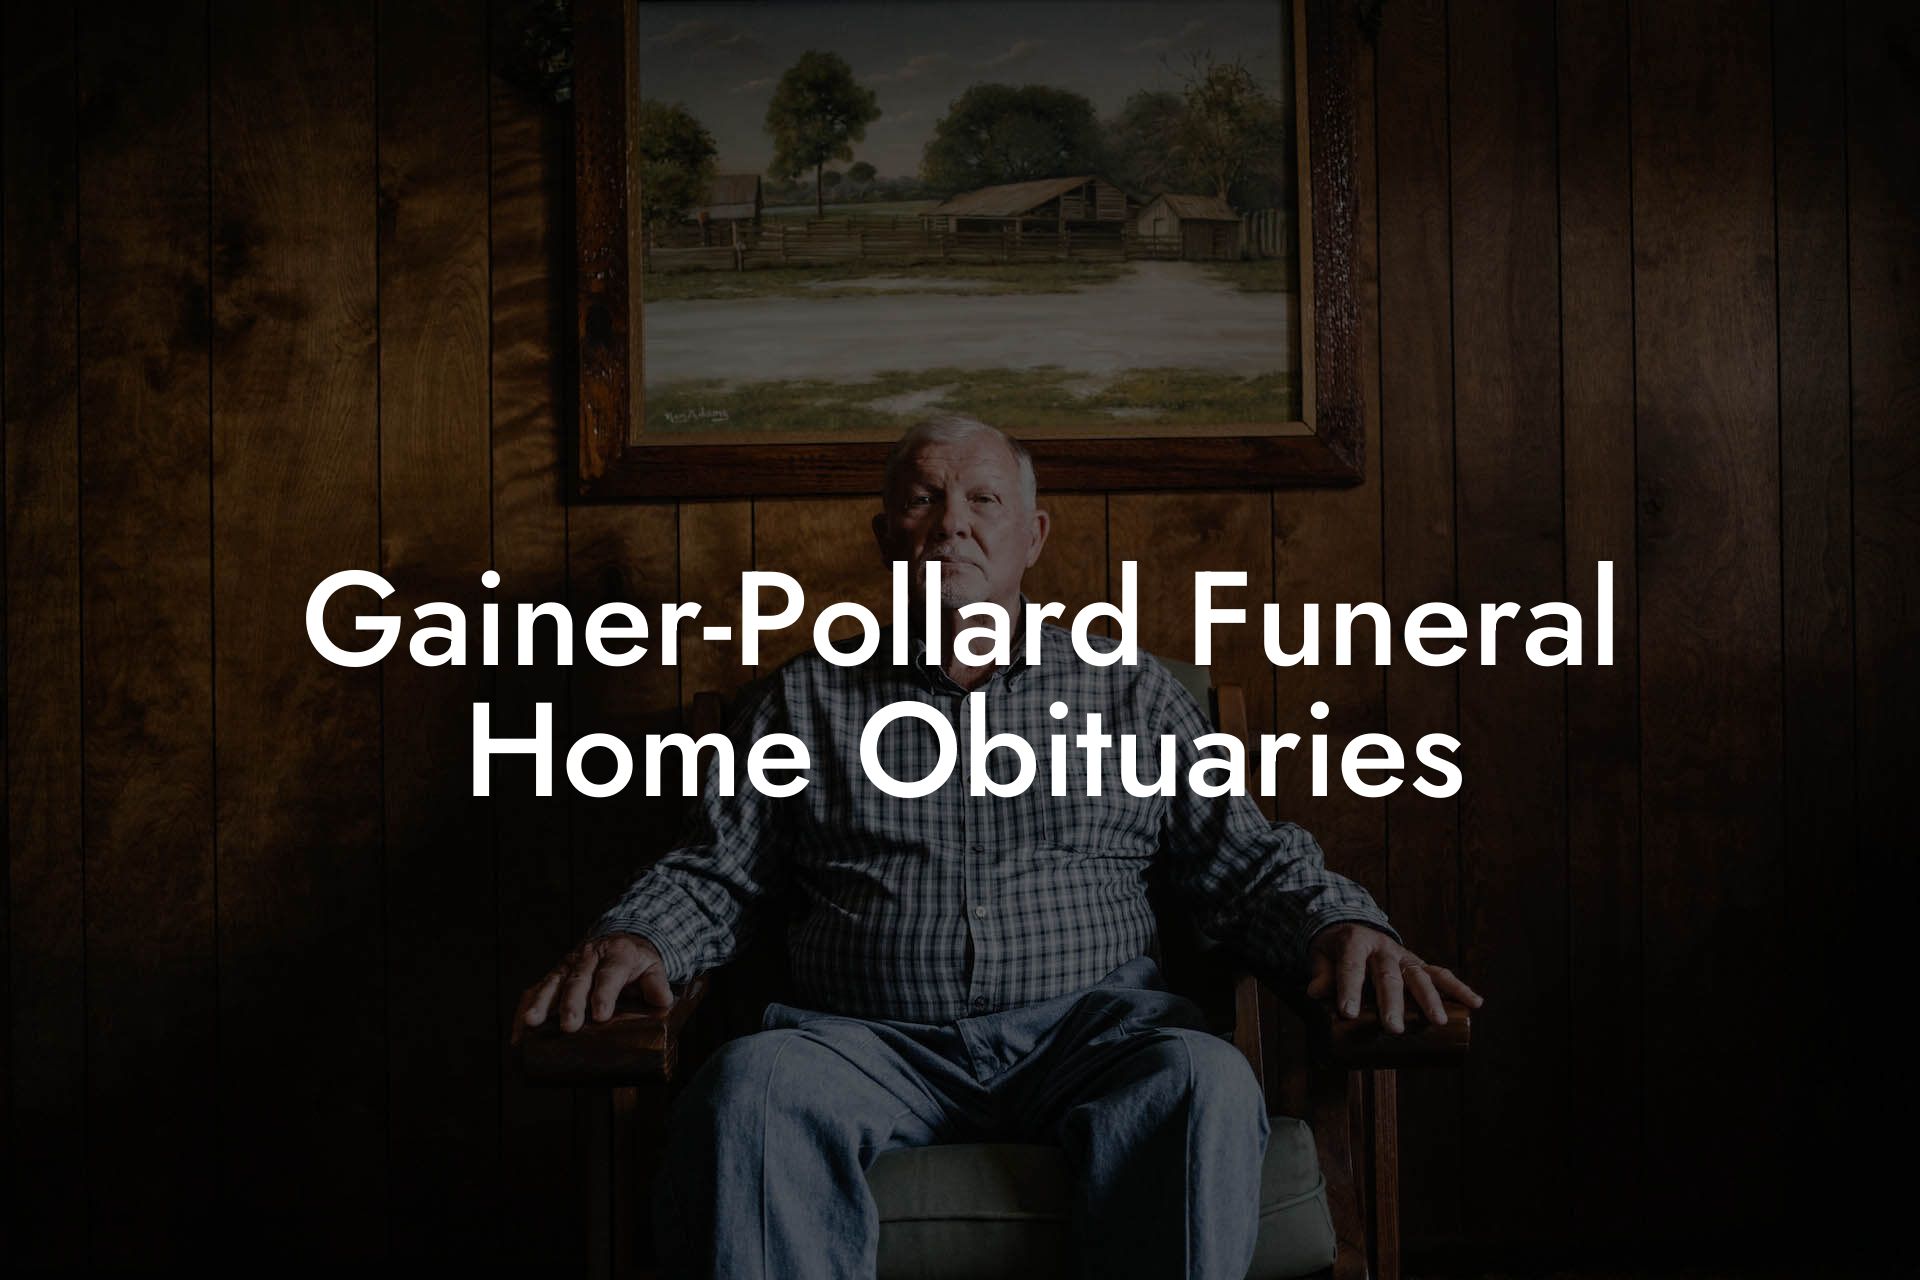 Gainer-Pollard Funeral Home Obituaries